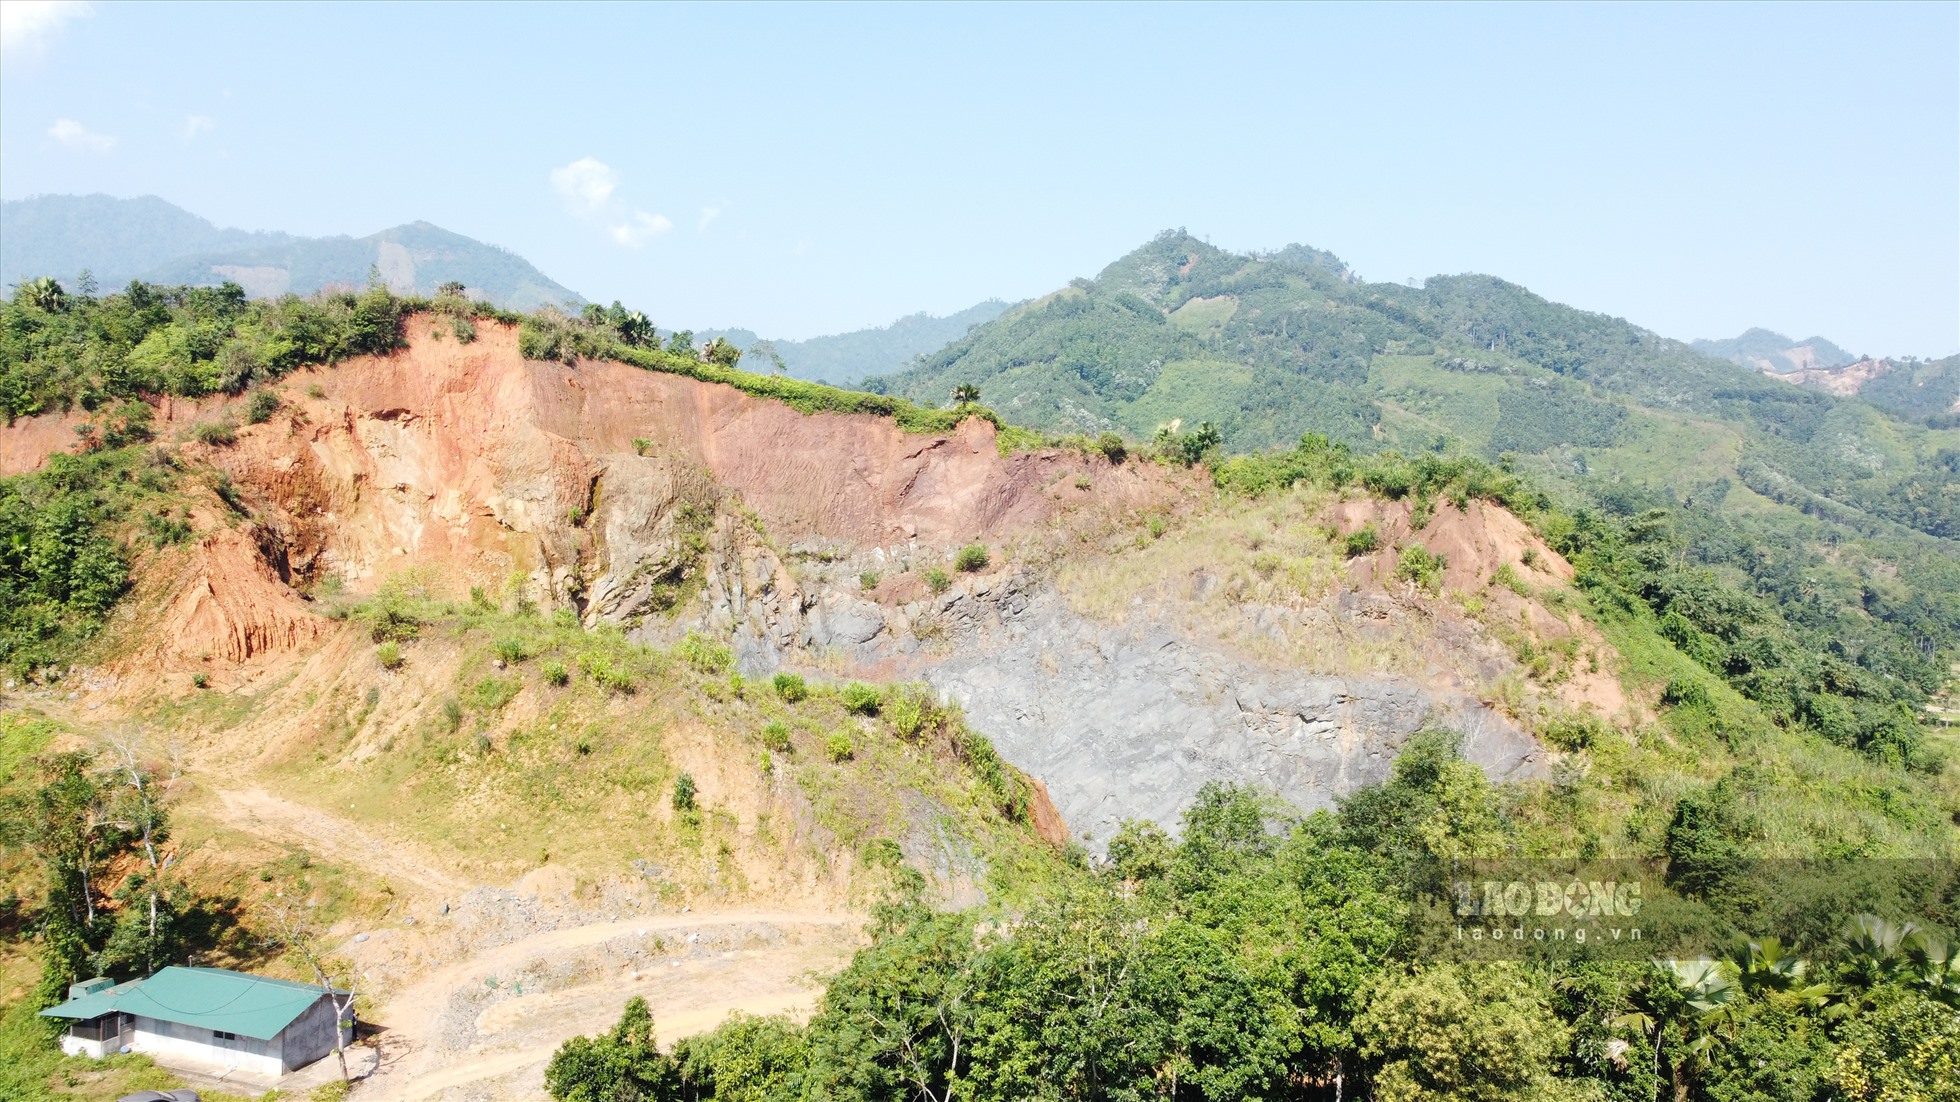 Vừa qua, UBND tỉnh Yên Bái vừa ra Quyết định xử phạt 1 tỉ đồng đối với Công ty TNHH Á Châu vì khai thác khoáng sản vượt công suất được cho phép.